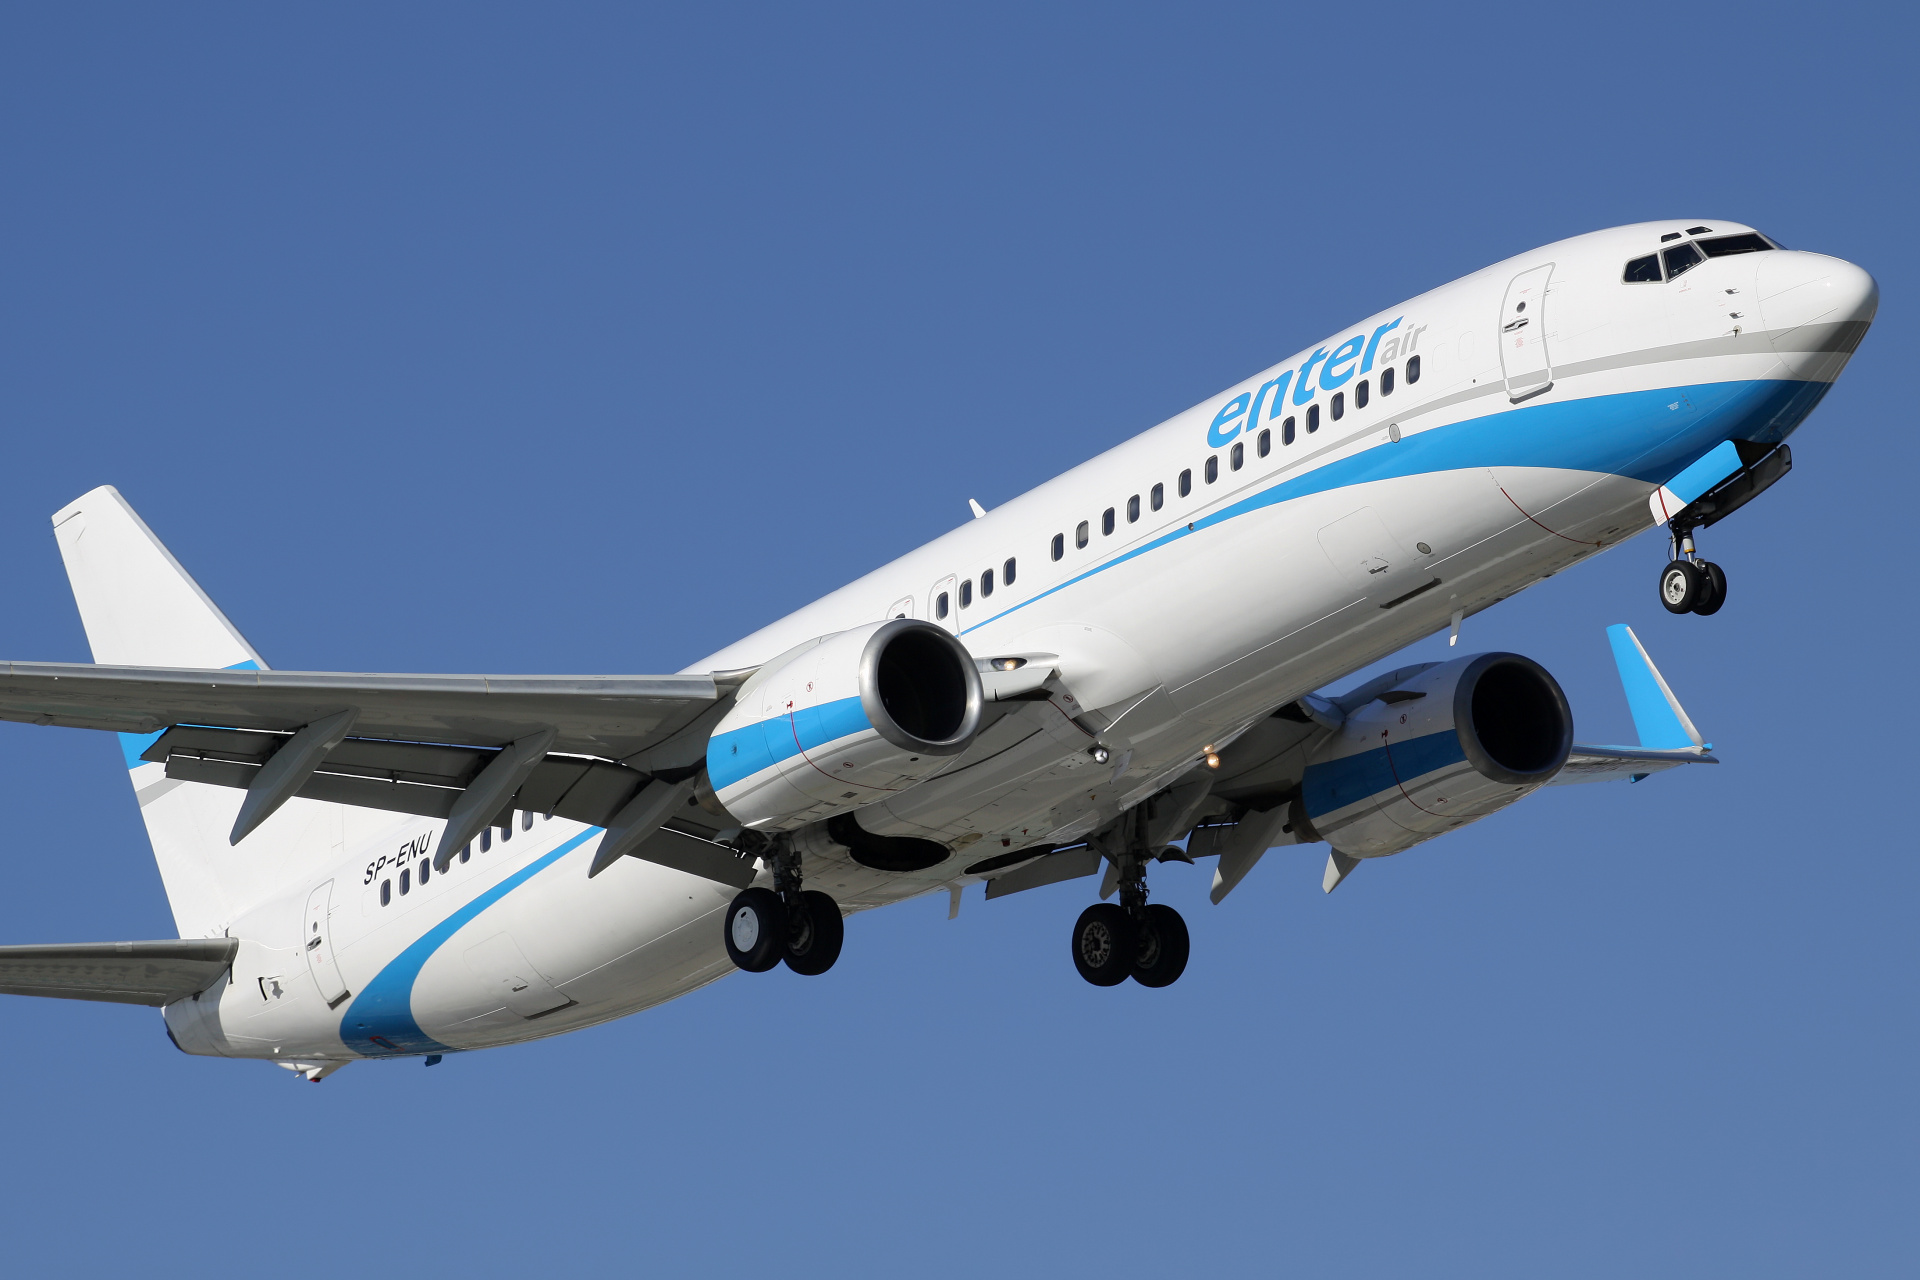 SP-ENU (Aircraft » EPWA Spotting » Boeing 737-800 » Enter Air)